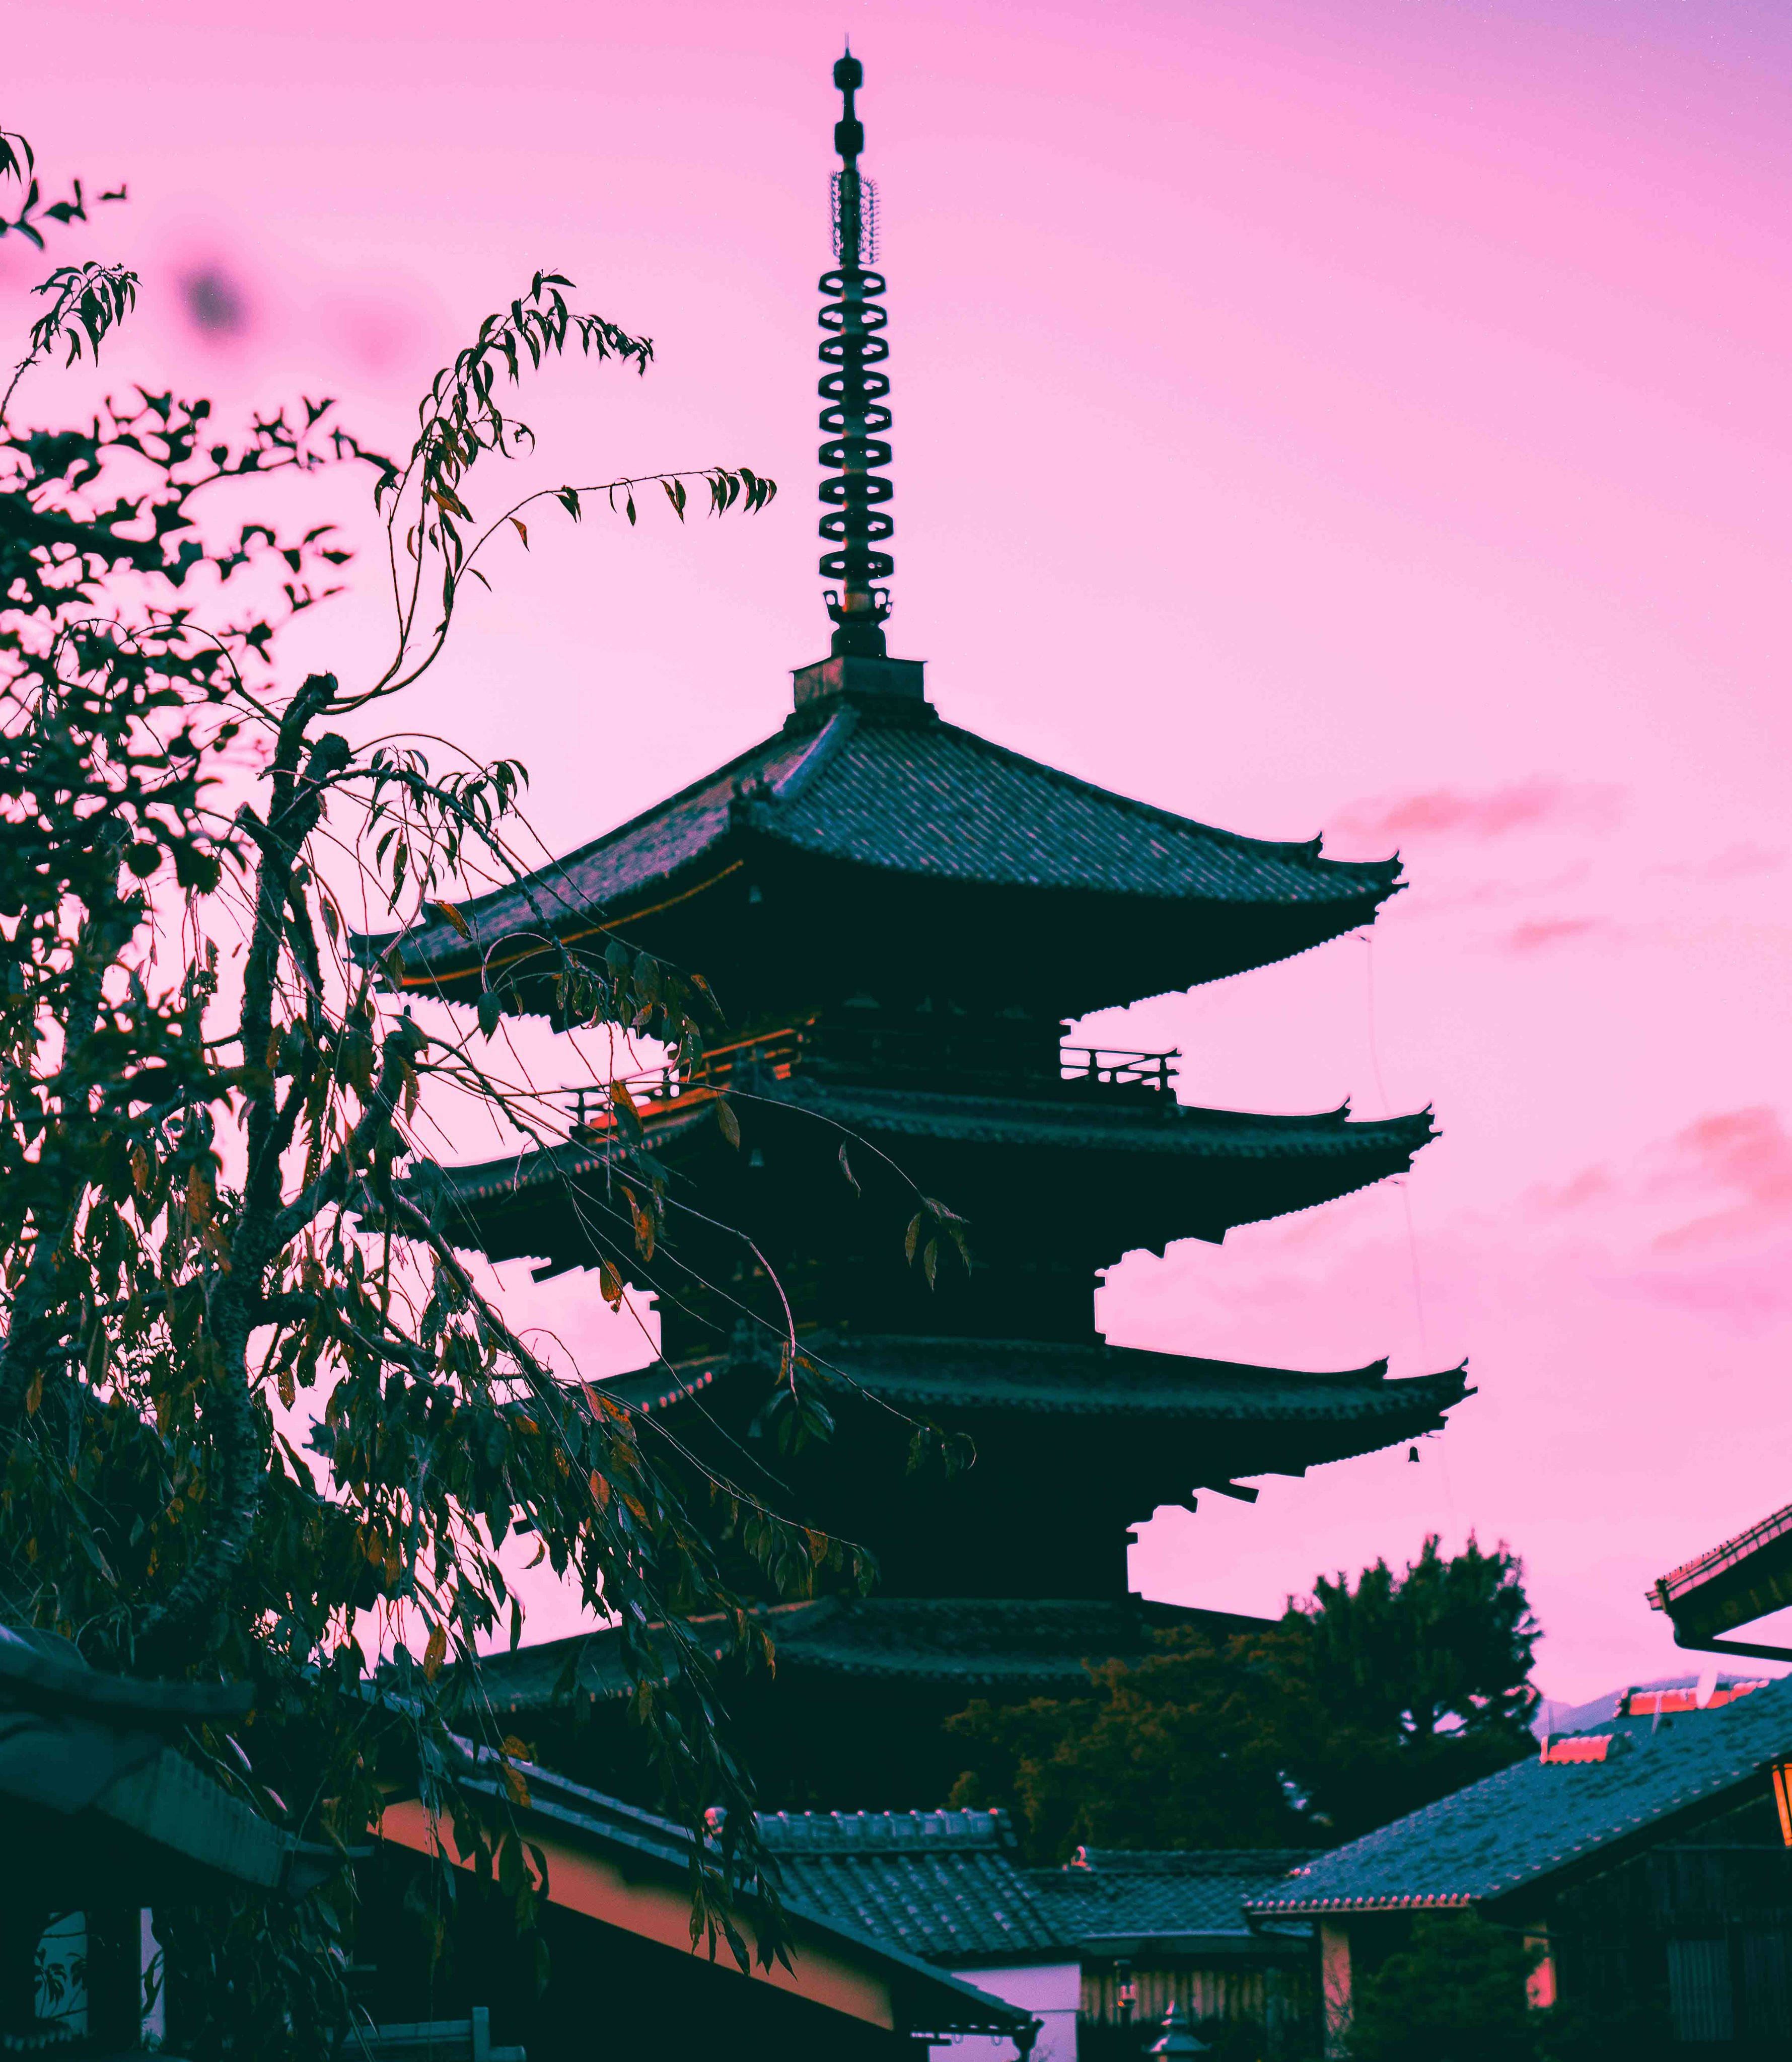 потрясающая пагода в пастельной японской эстетике